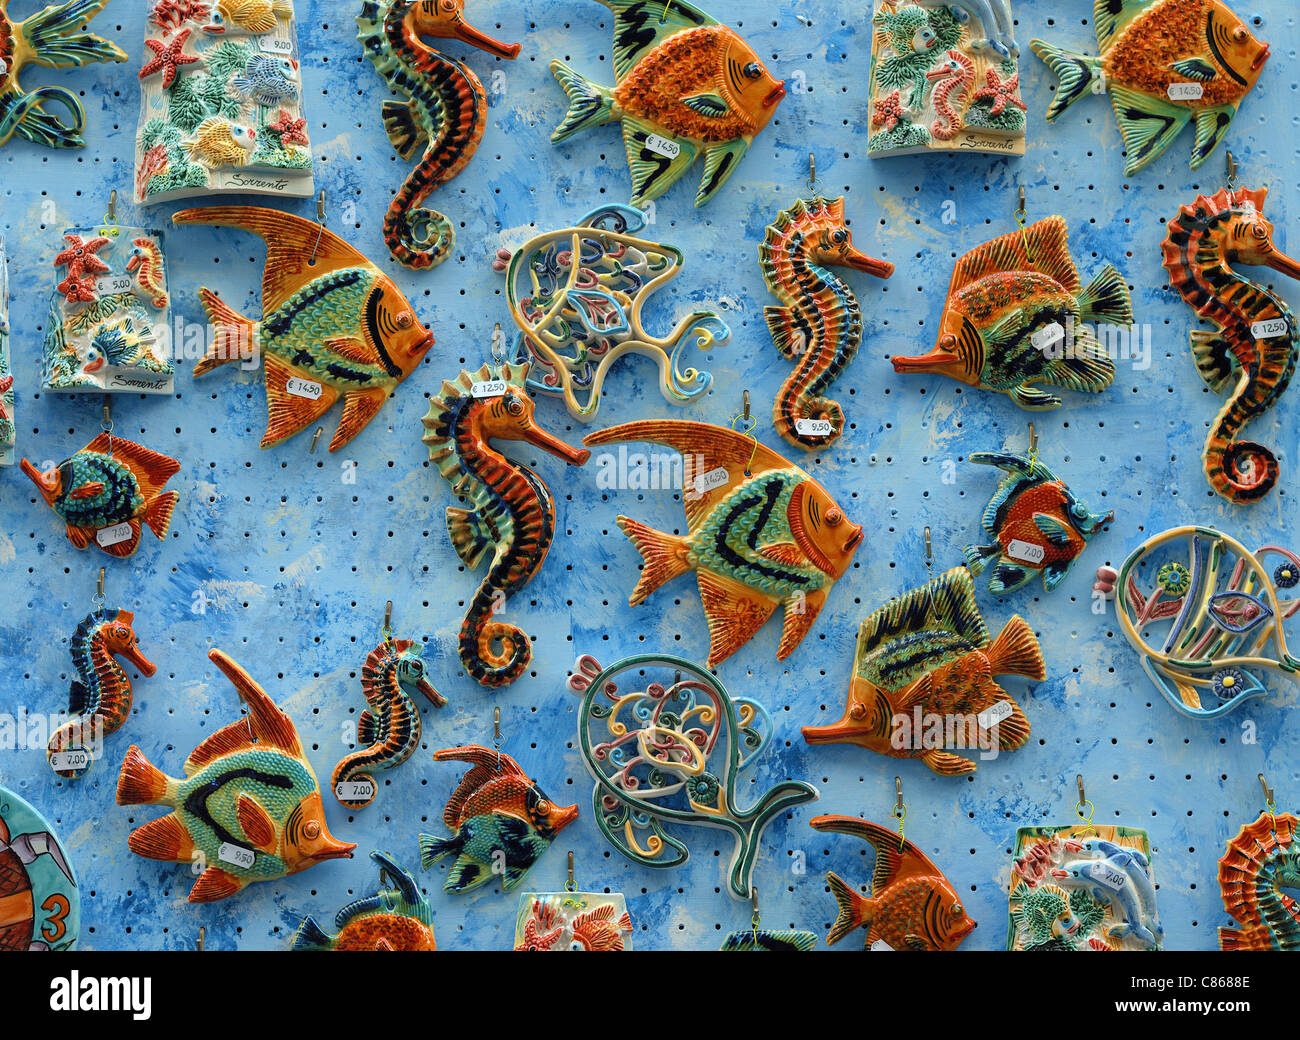 Les hippocampes et poissons en céramique Sorrento Italie Banque D'Images